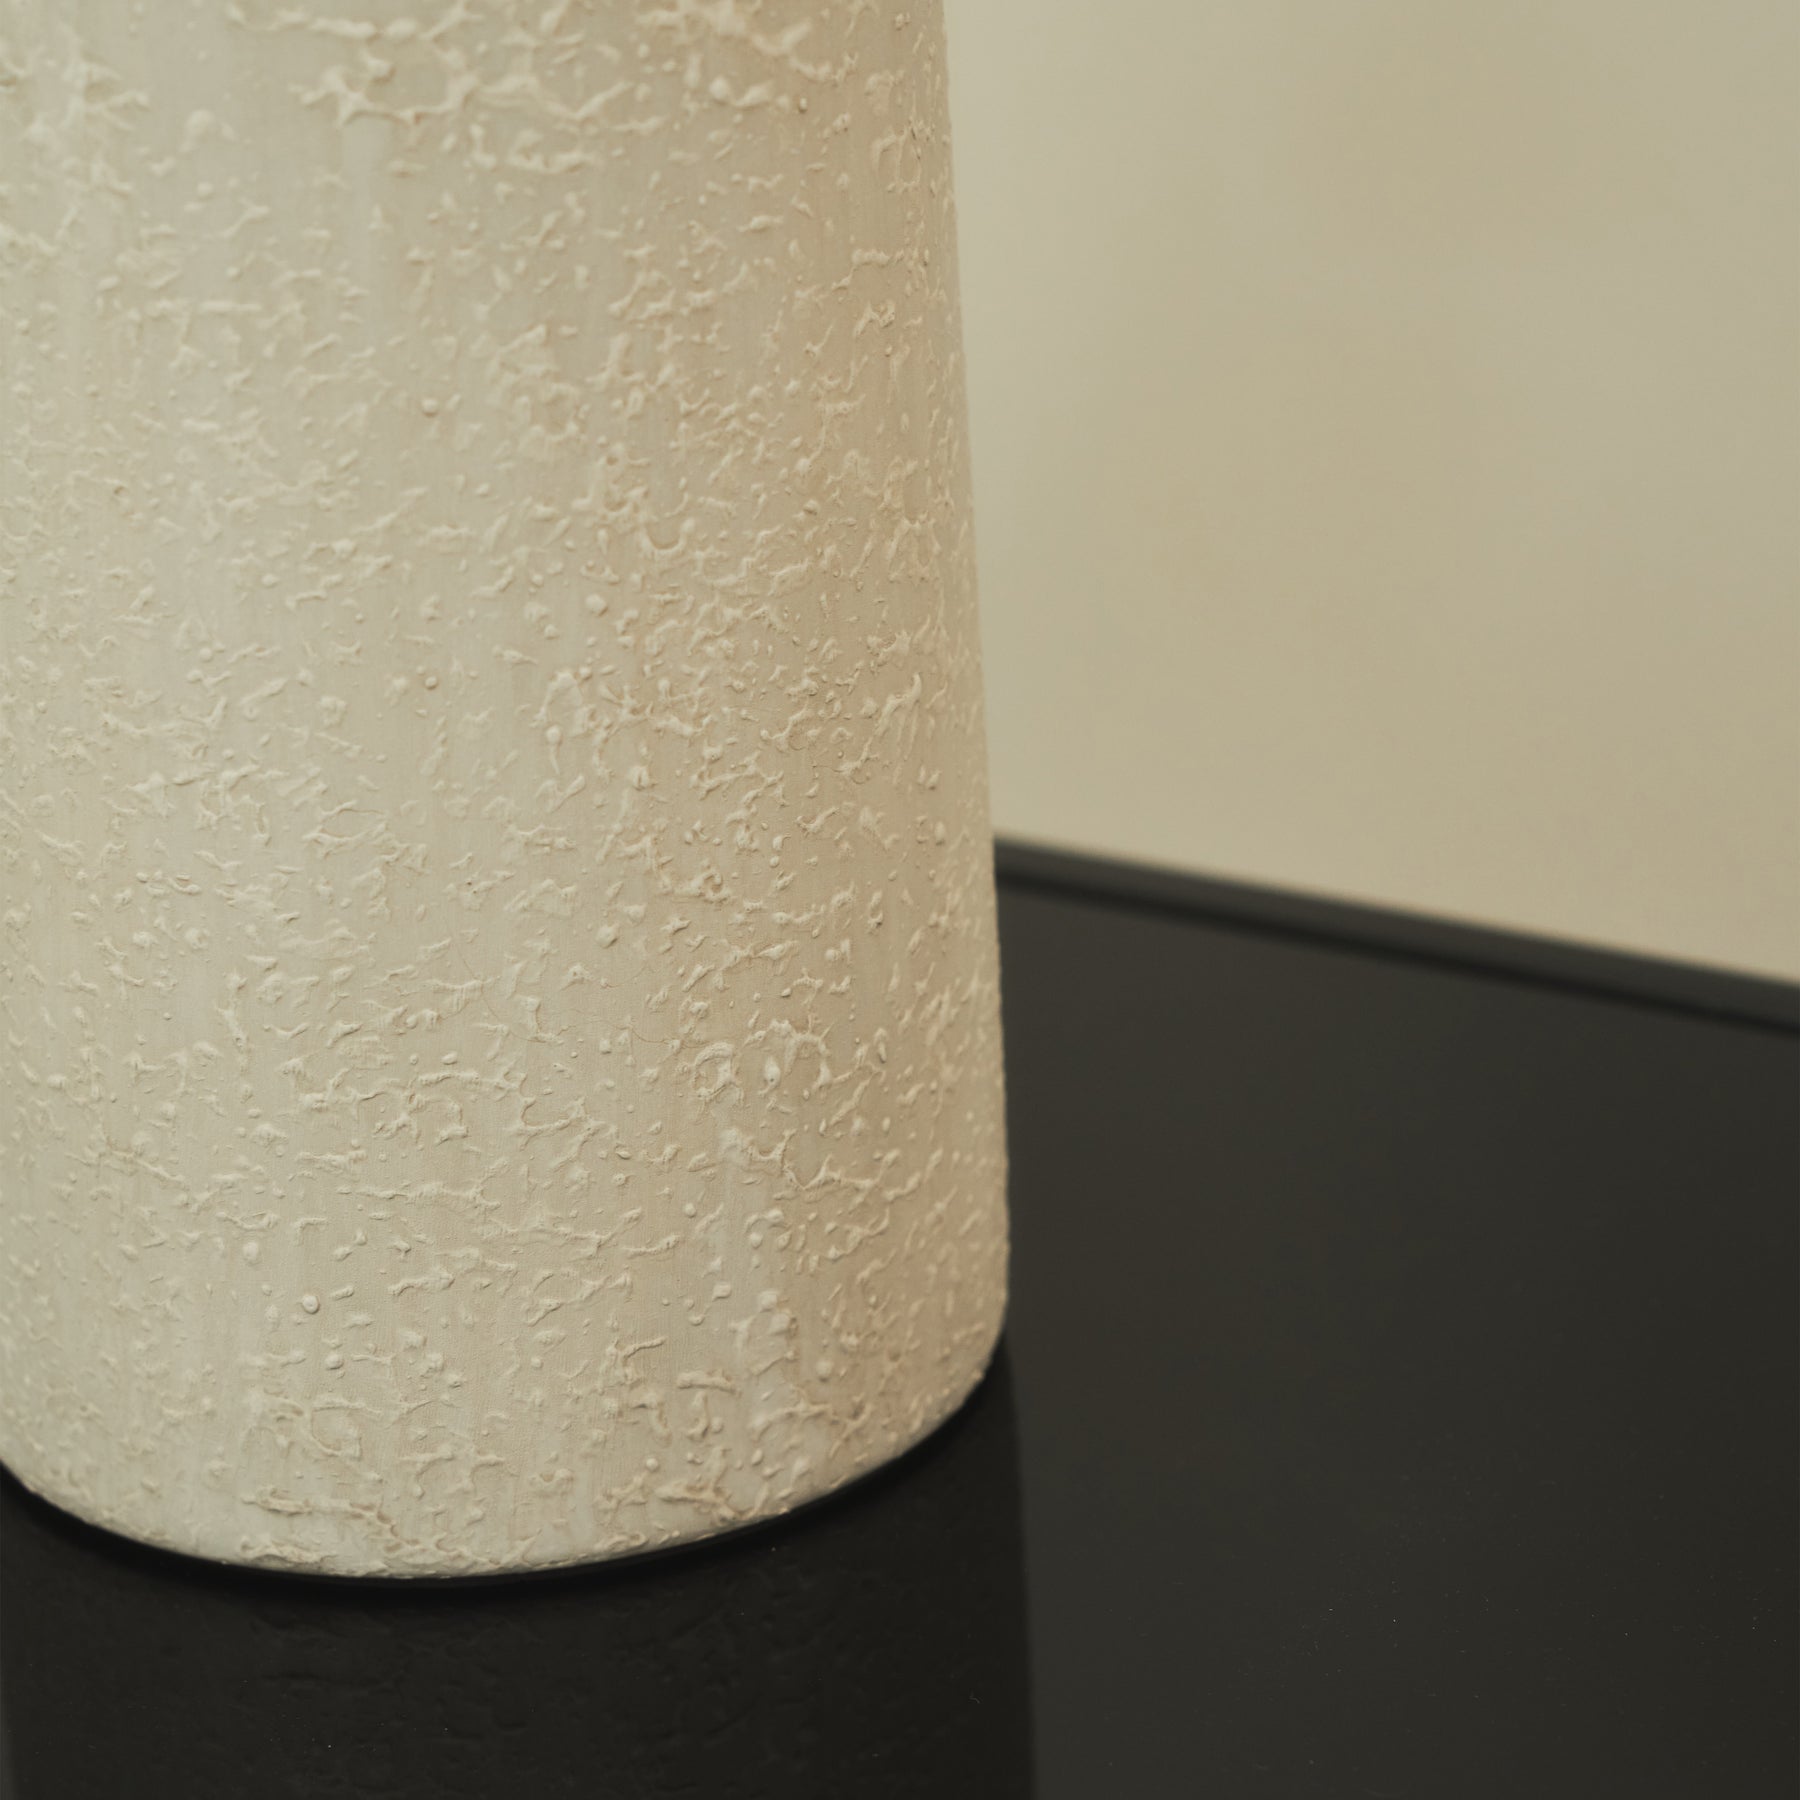 Palmaria - Textured Ceramic Based Table Lamp Natural Shade